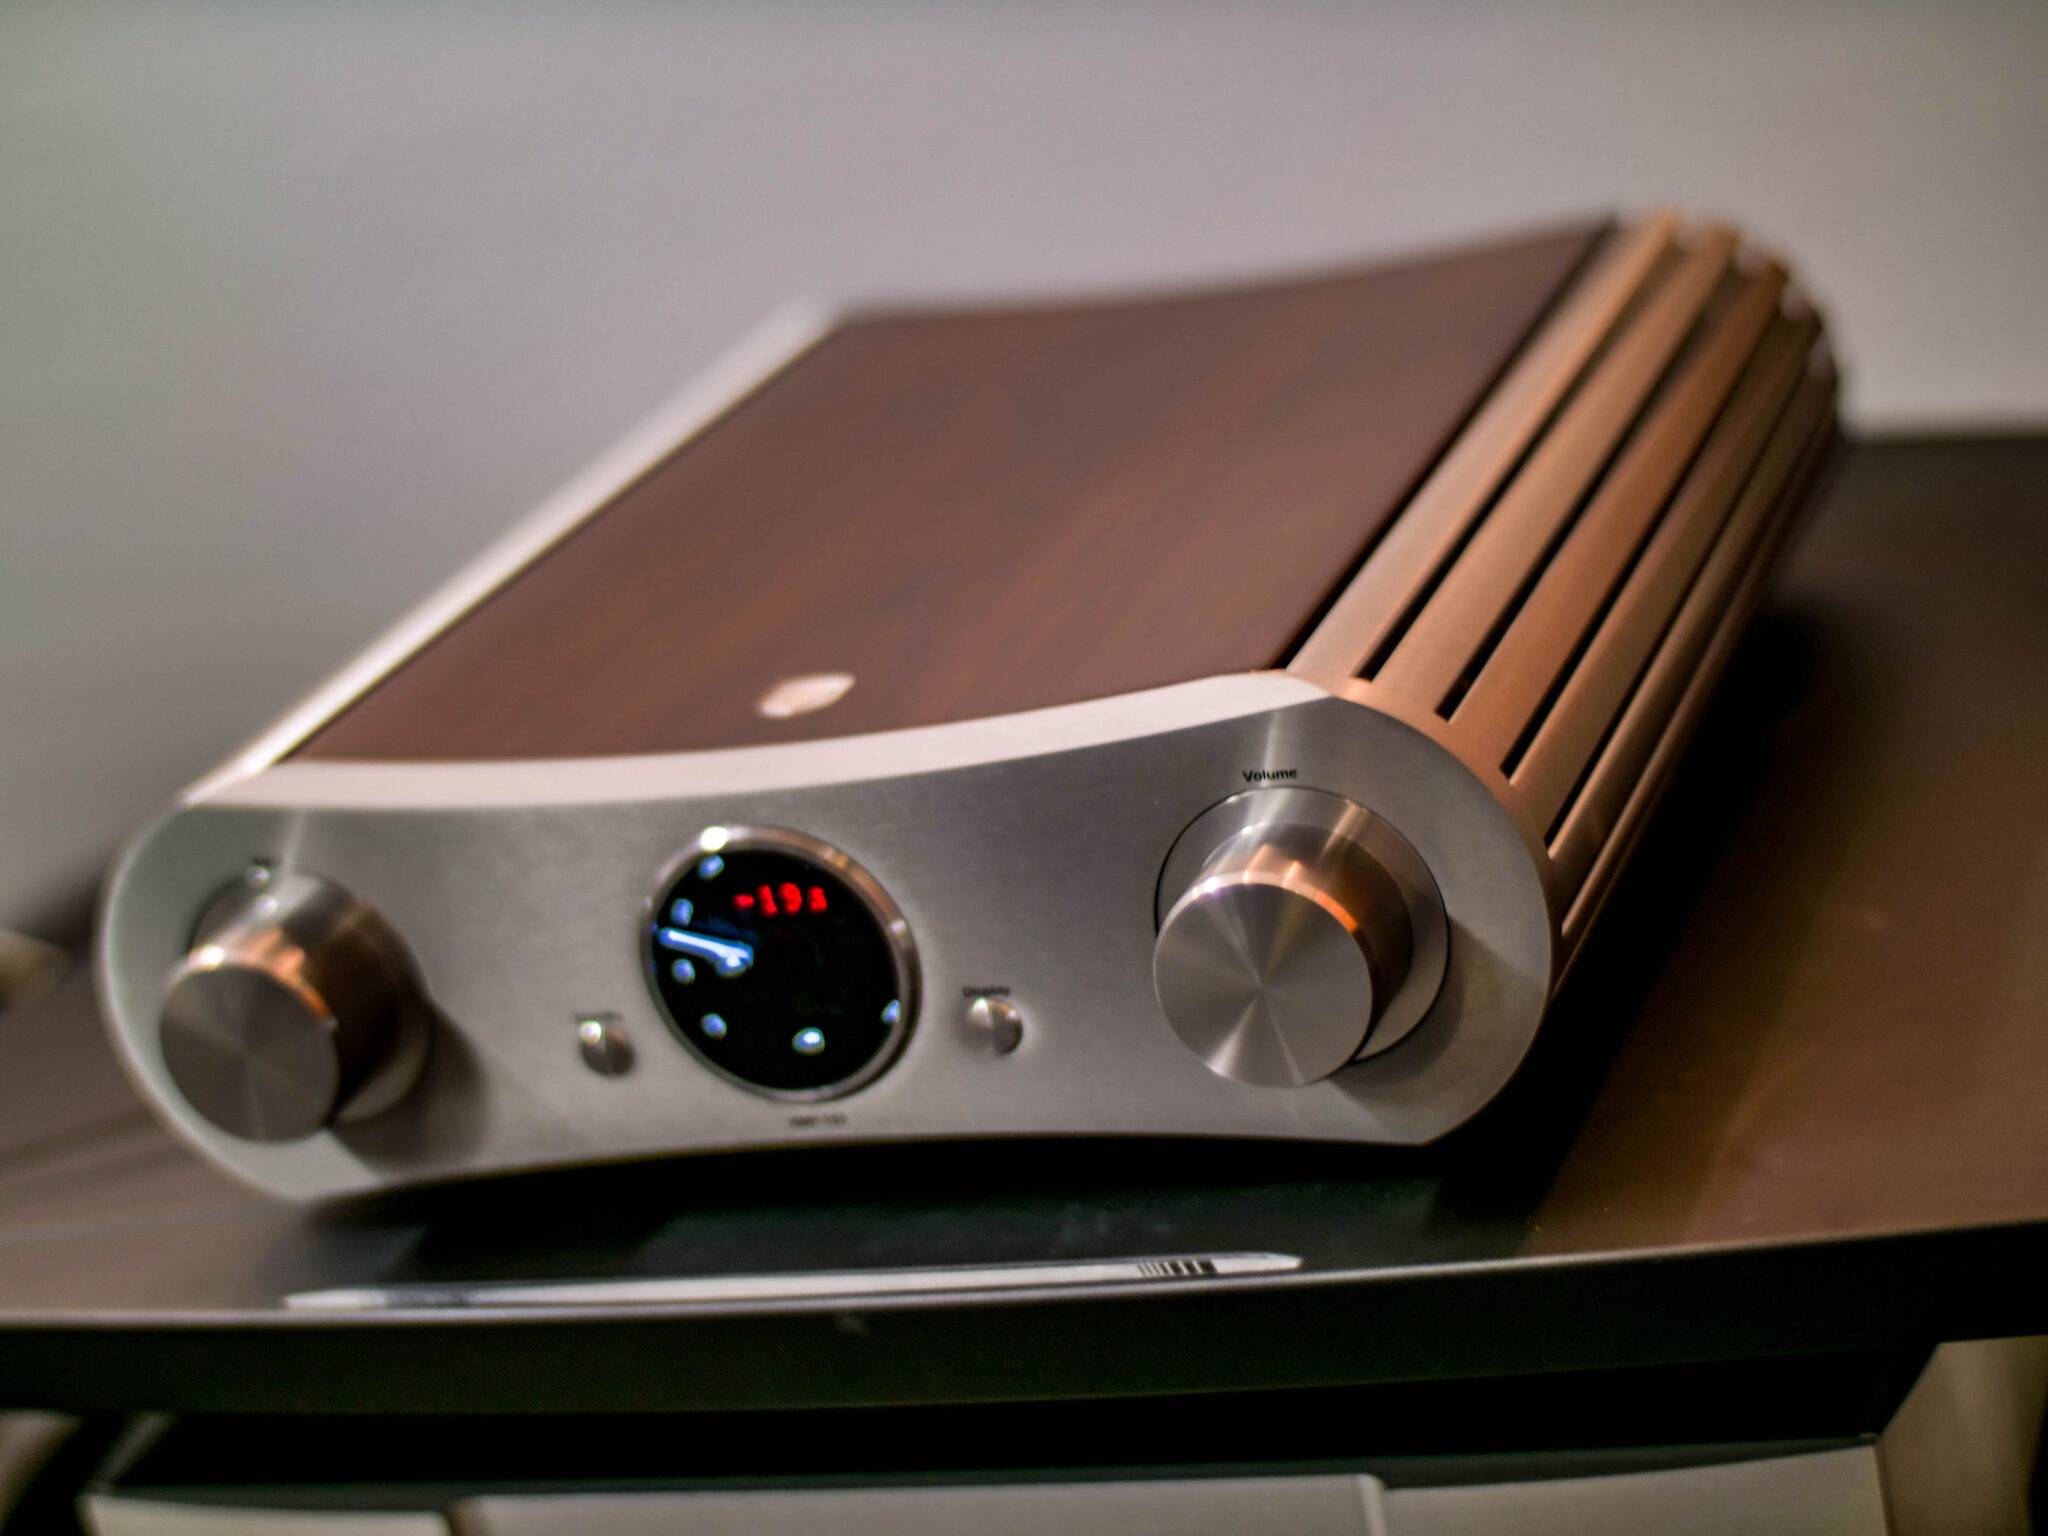 Gato Audio Amp-150